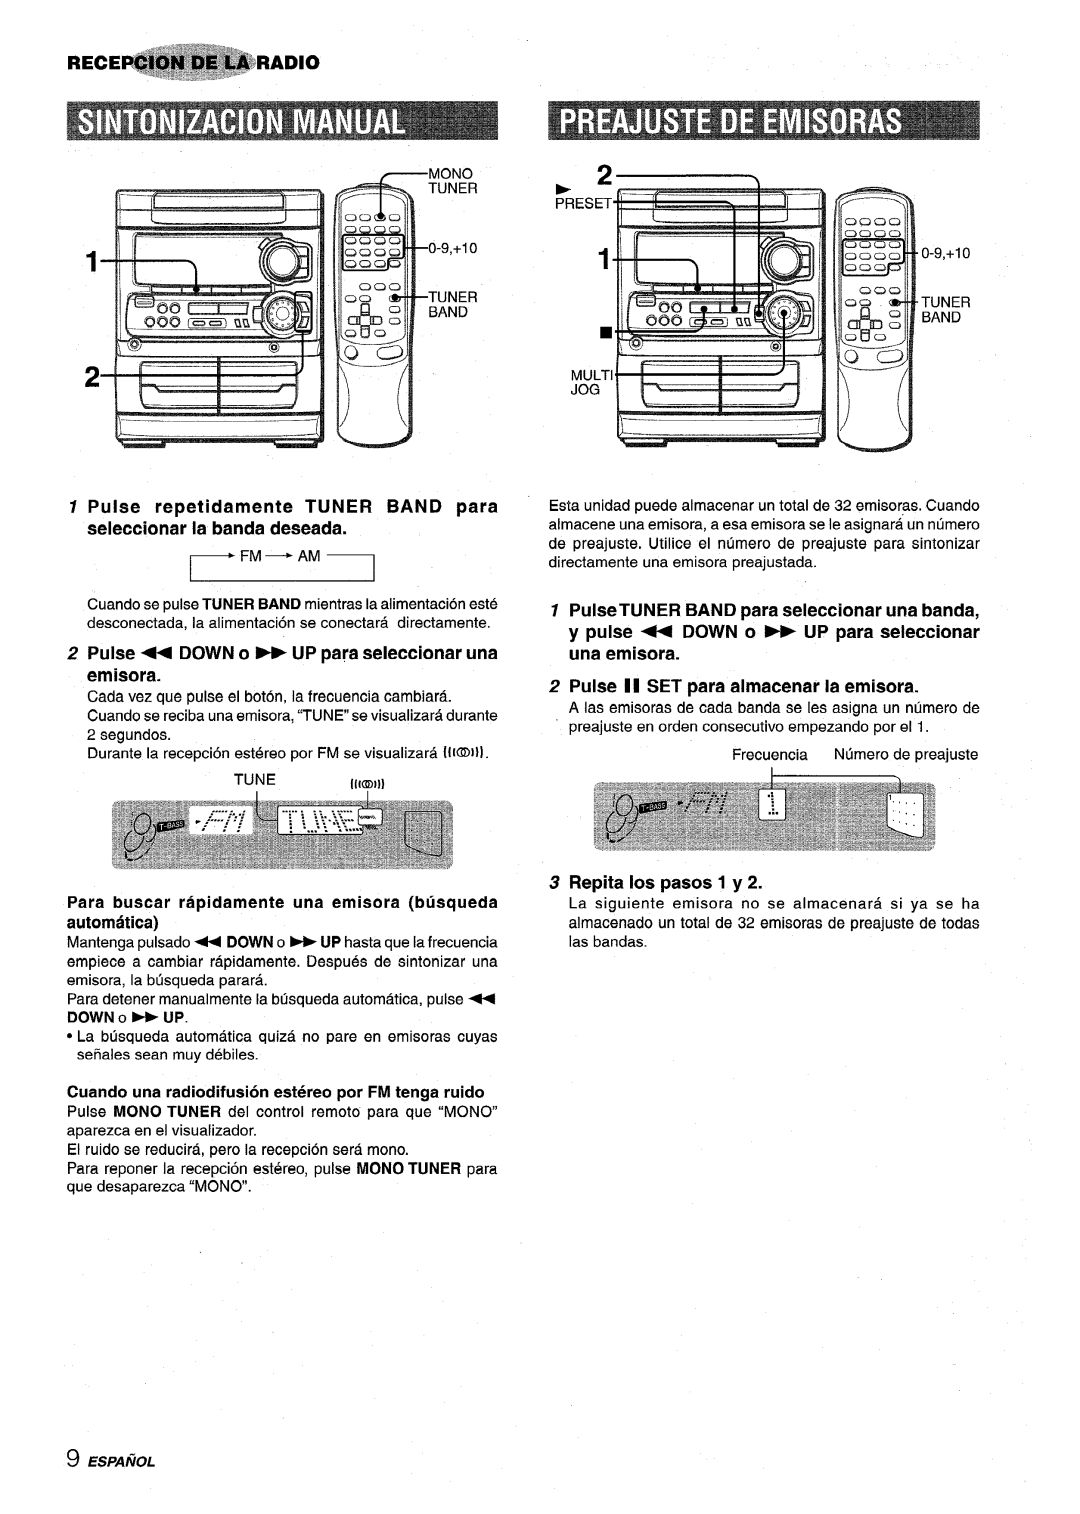 Sony NSX-MT320 Pulse repetidamente TUNER BAND para seleccionar la banda deseada, Pulse II SET para almacenar la emisora 